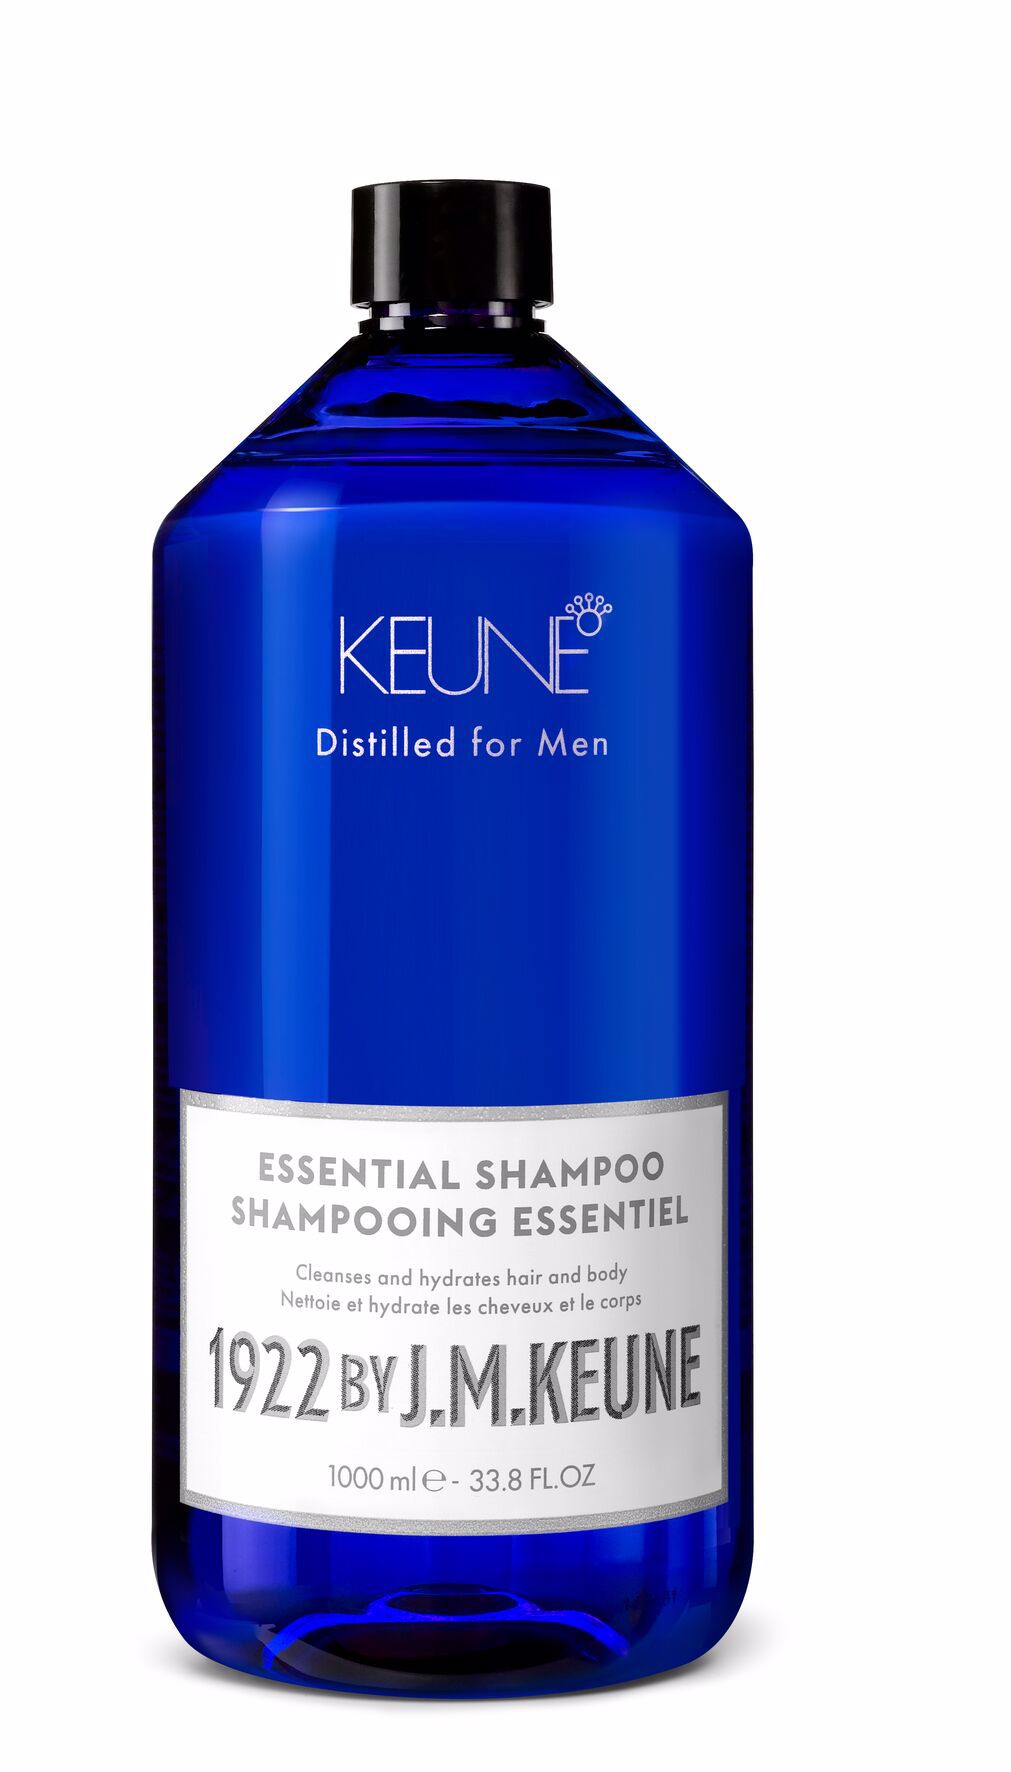 Notre Essential Shampoo pour hommes nettoie en profondeur les cheveux, la barbe et le corps quotidiennement. La créatine et l'extrait de bambou assurent des cheveux forts et volumineux. Sur keune.ch.